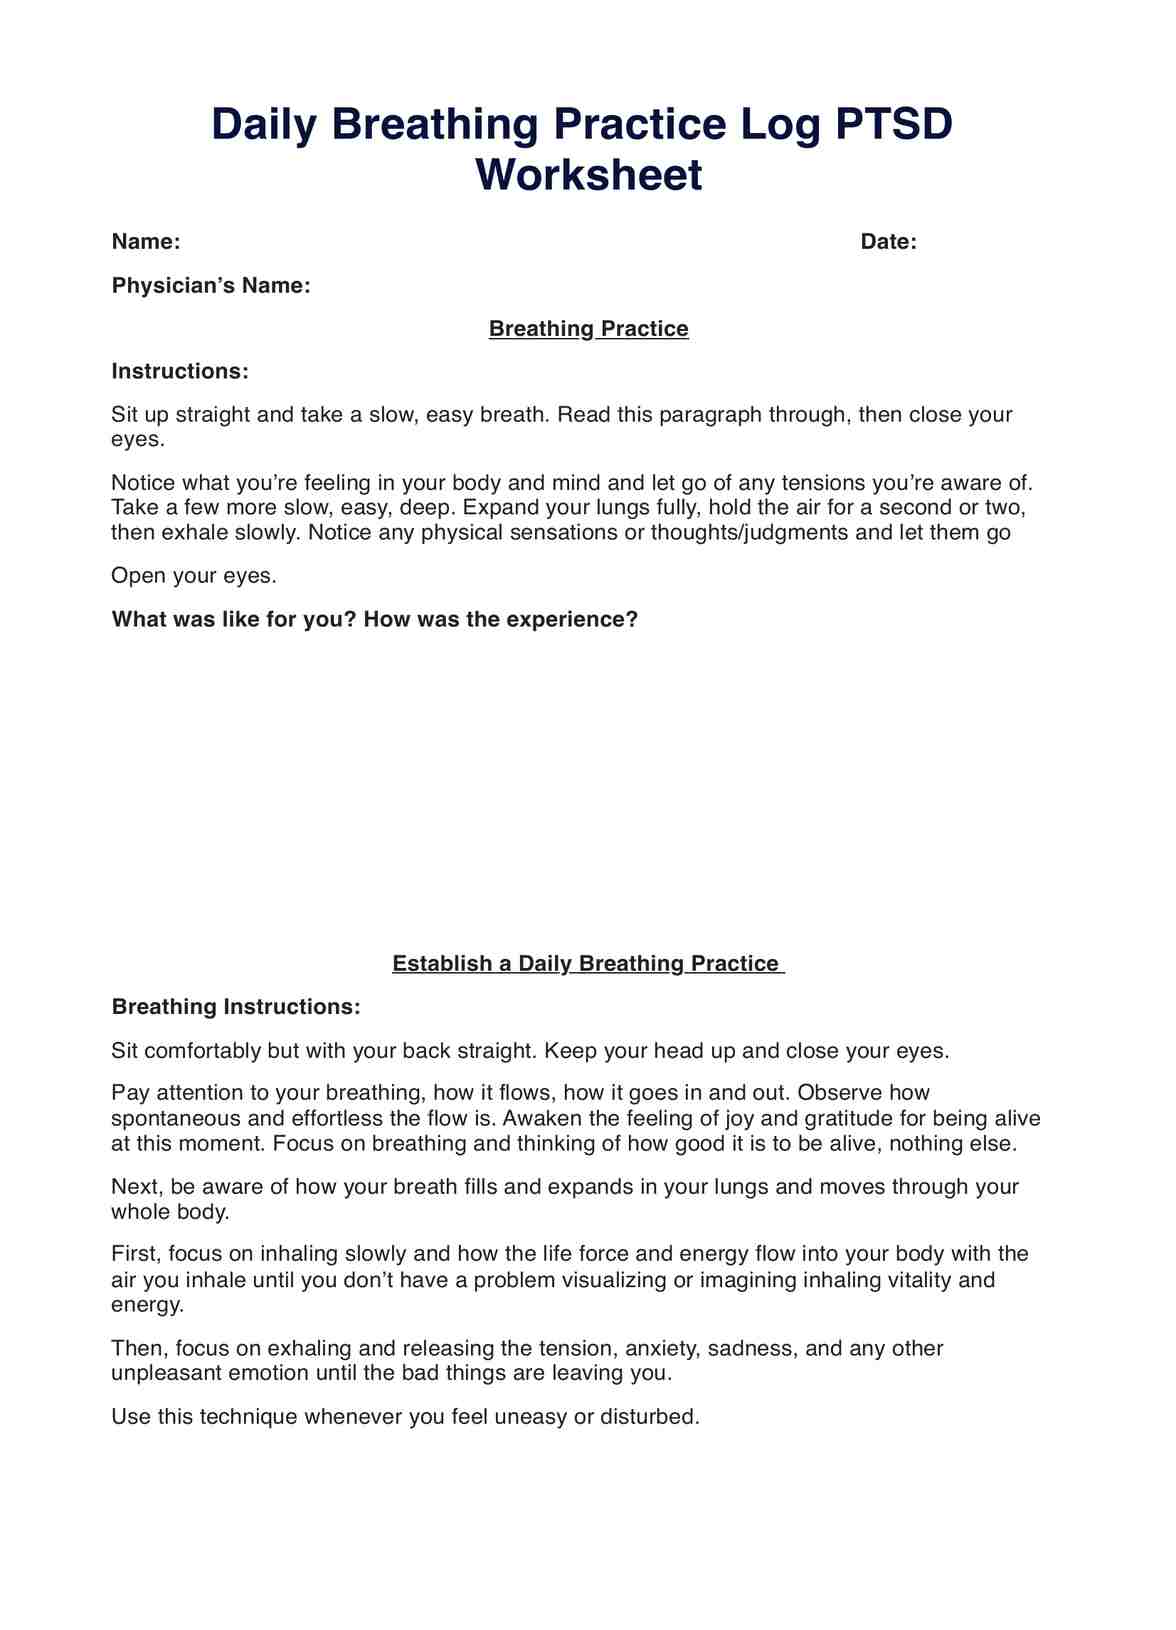 Daily Breathing Practice Log PTSD Worksheet PDF Example